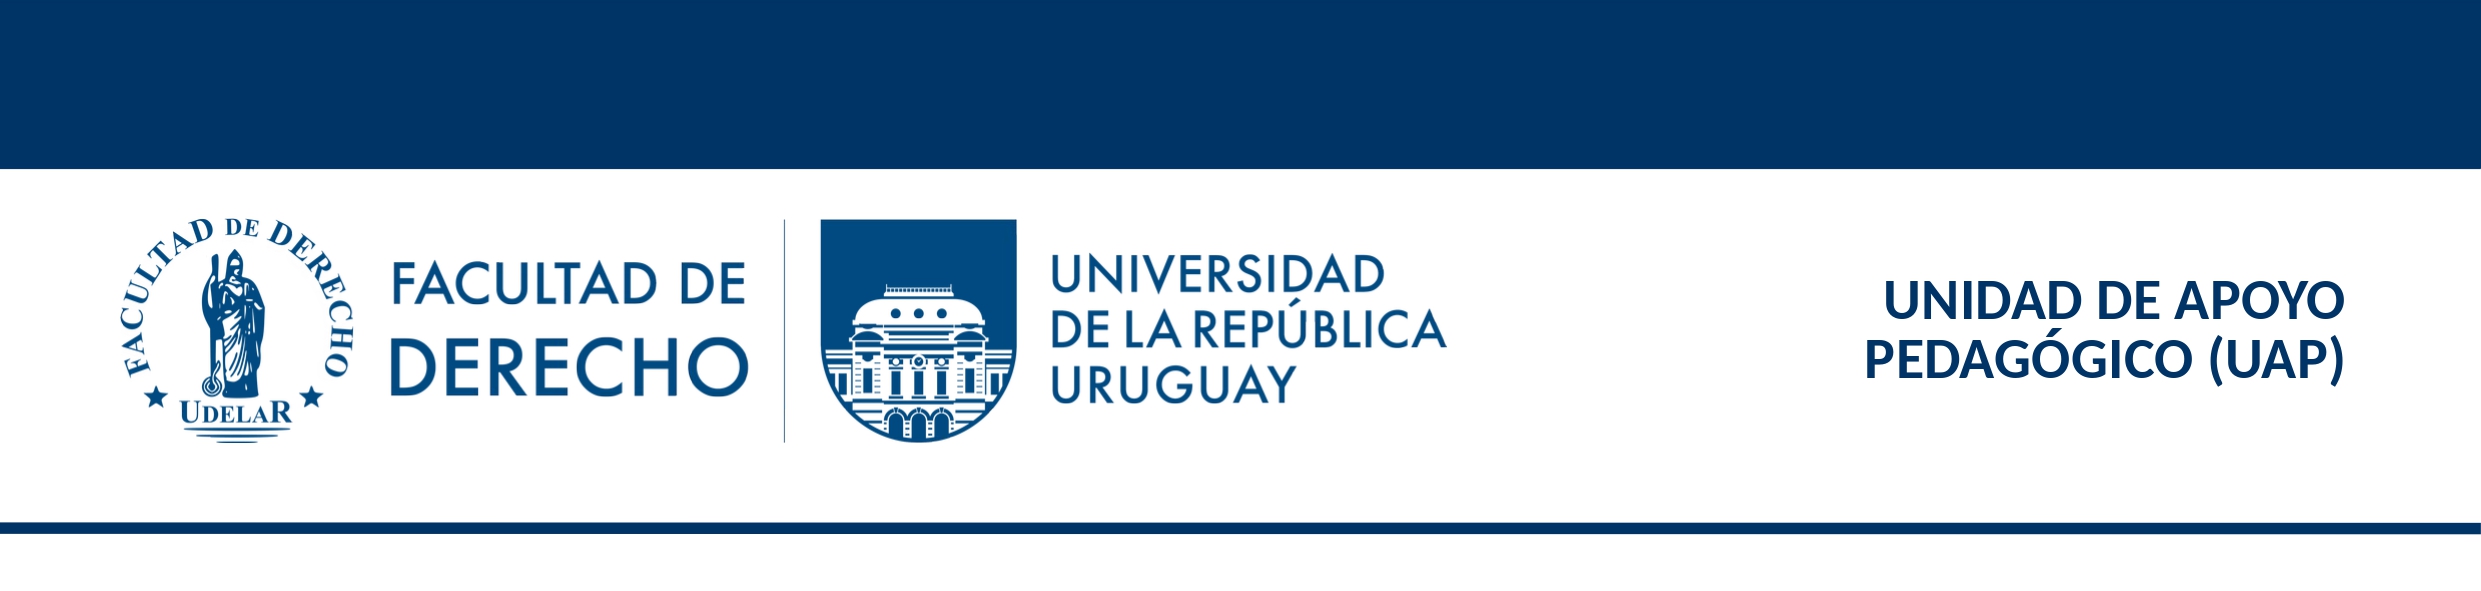 Facultad de Derecho, Universidad de la República